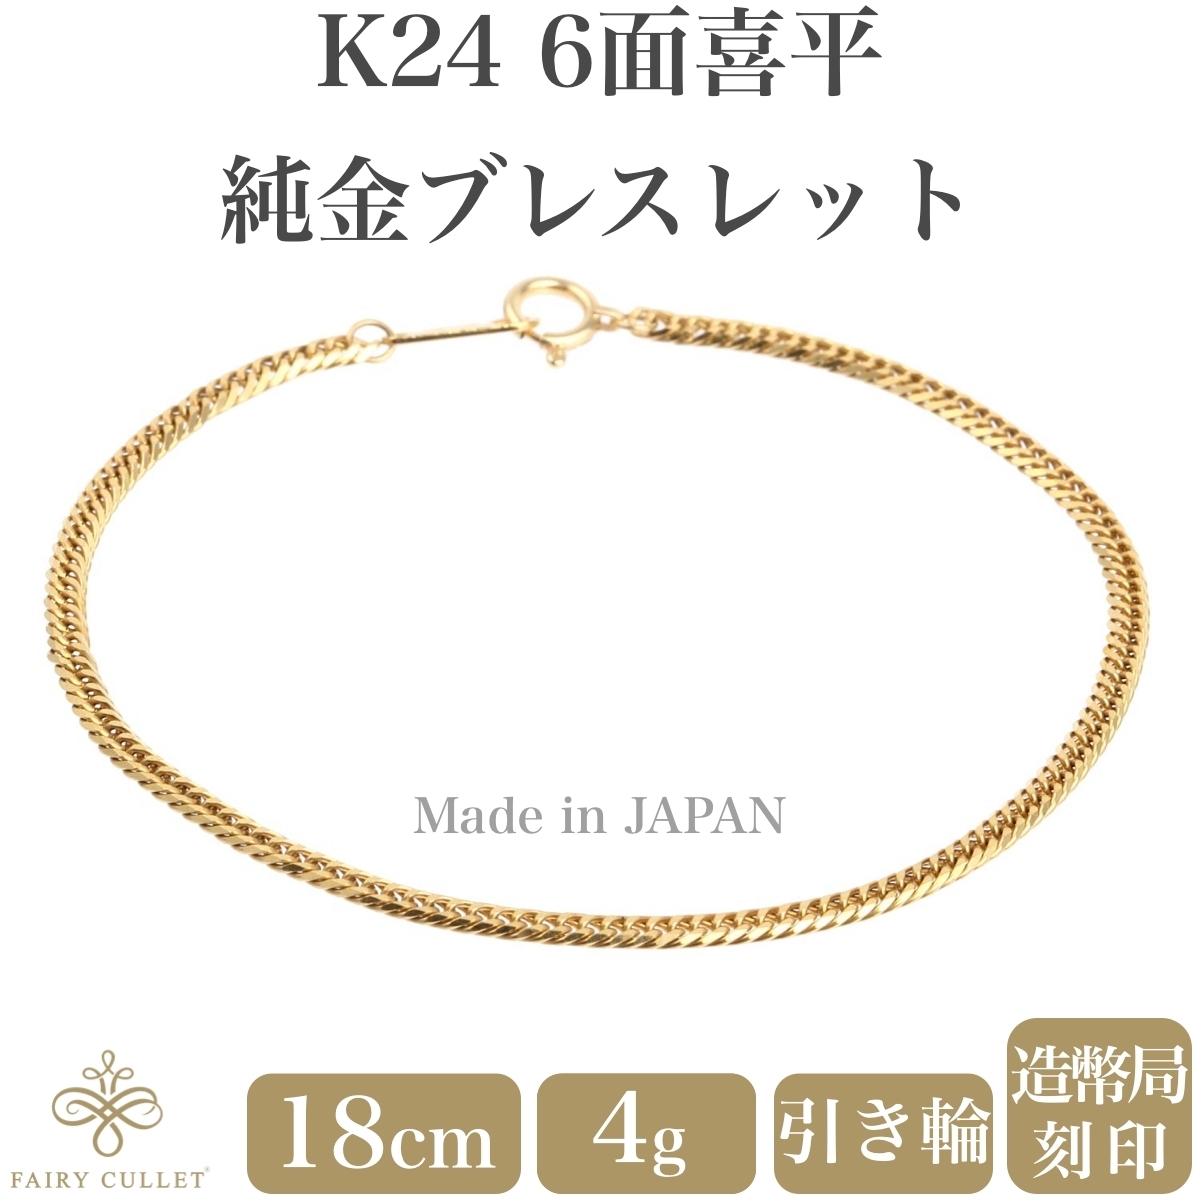 24金ブレスレット K24 6面W喜平チェーン 日本製 4g 18cm 引き輪